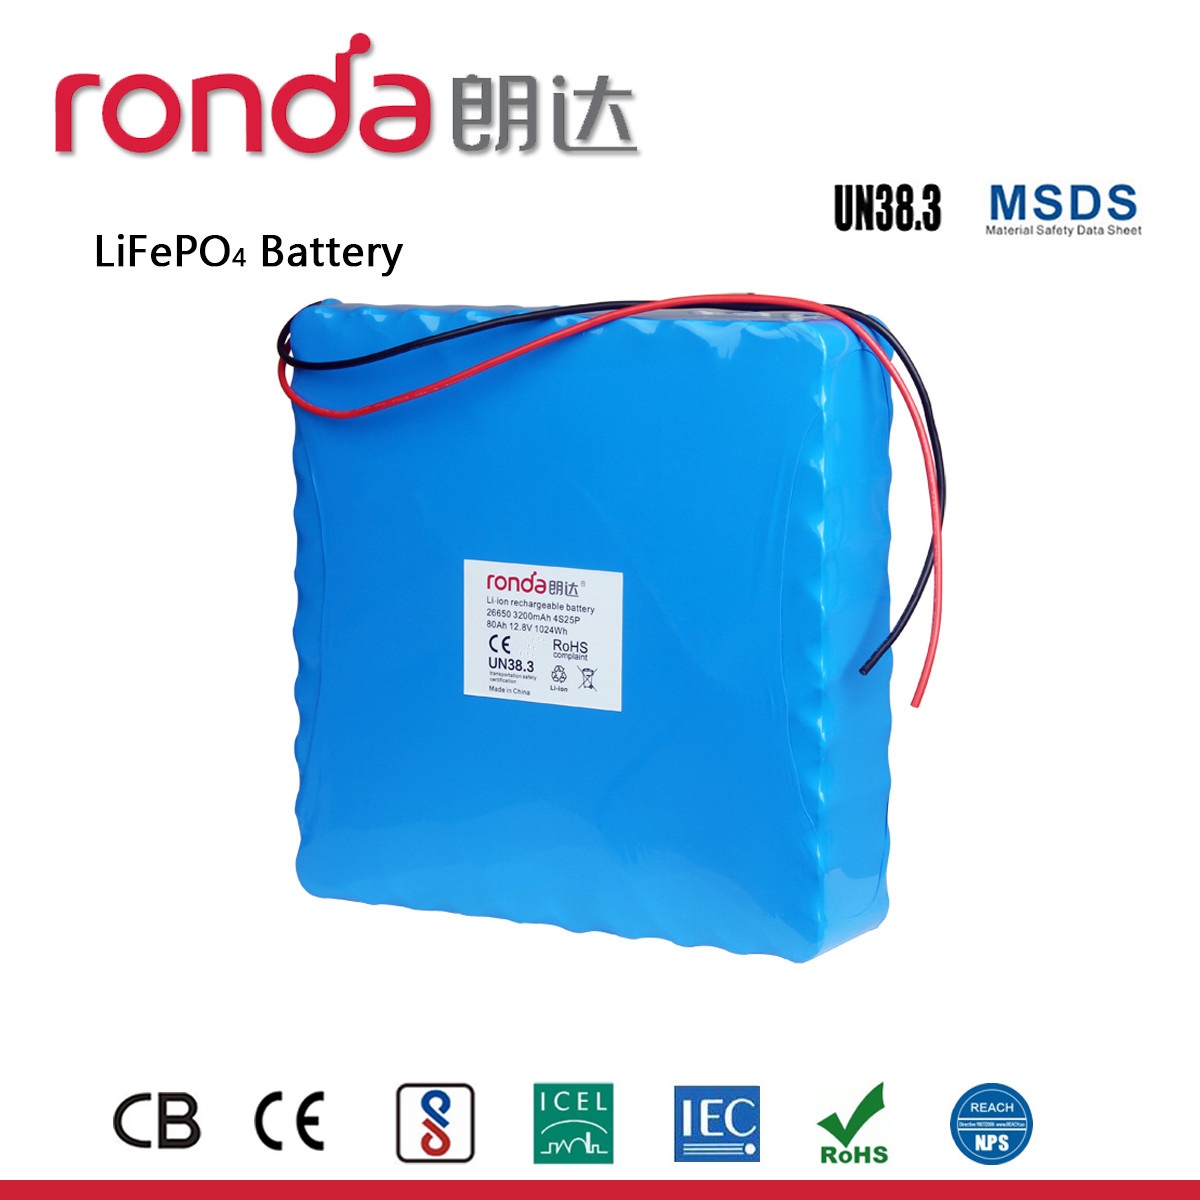 磷酸铁锂电池回收利用存在的问题有哪些？